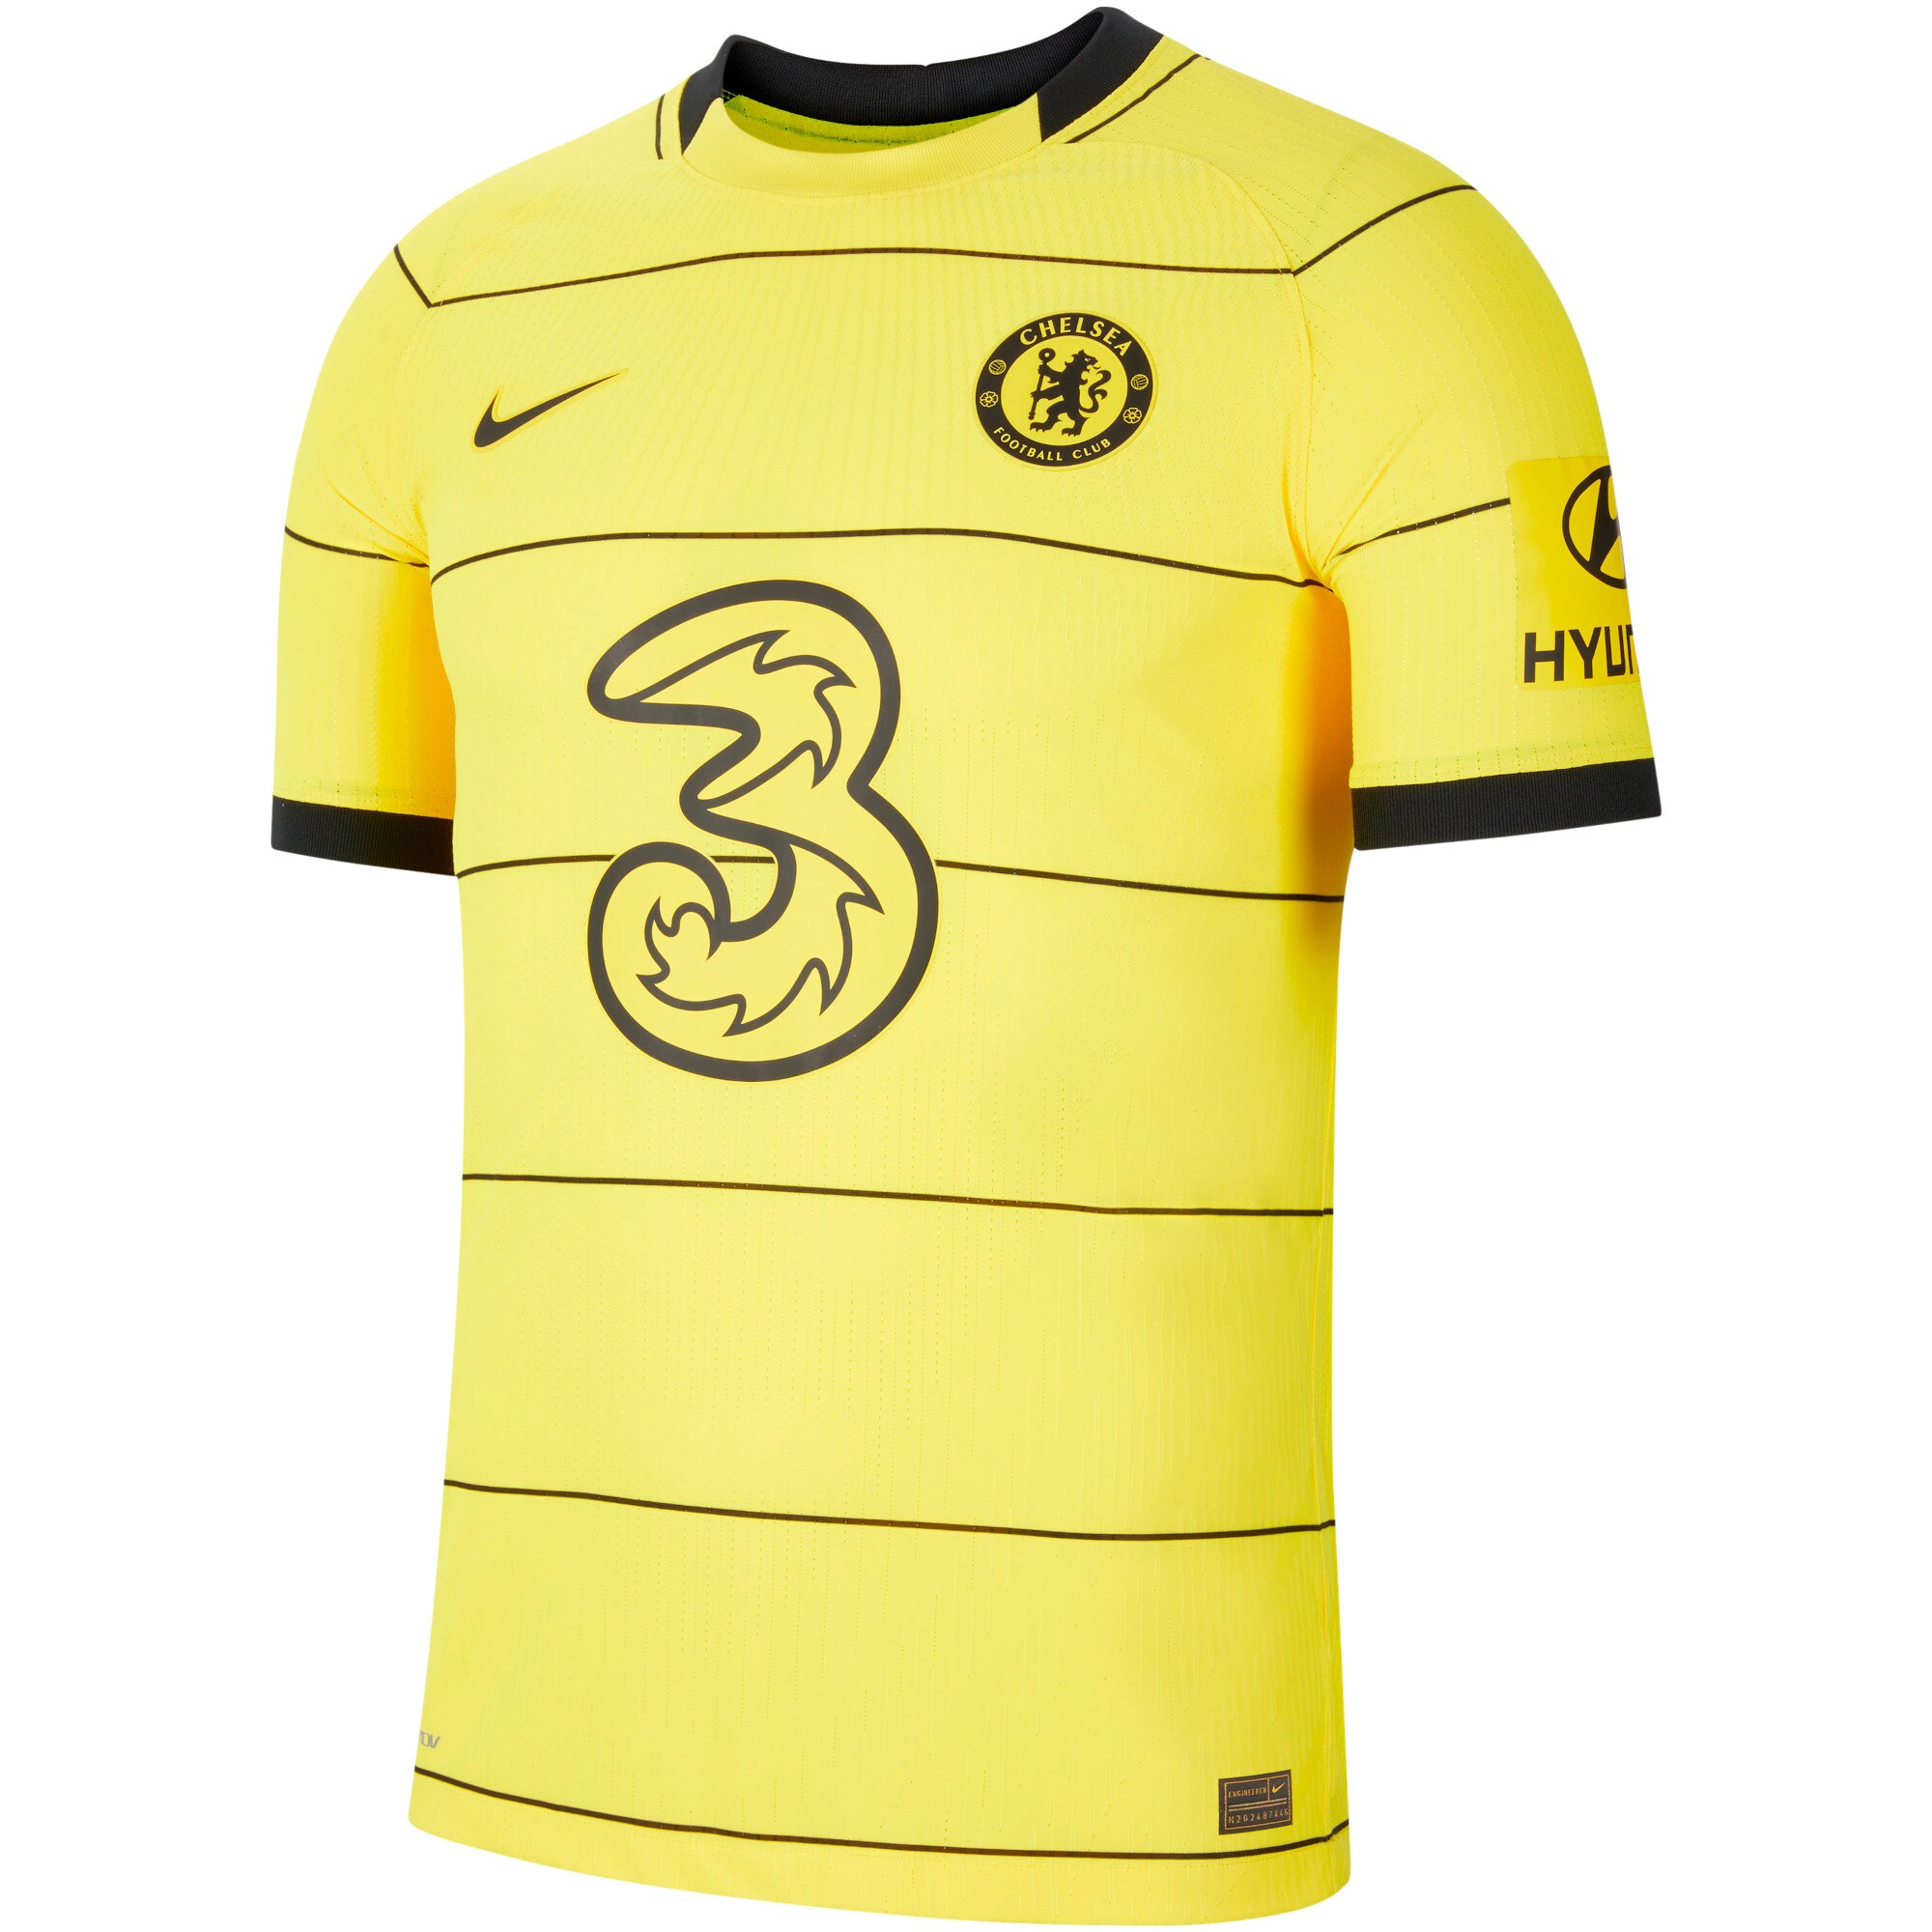 Chelsea Away Vapor Match Shirt 2021-22 with James 24 printing